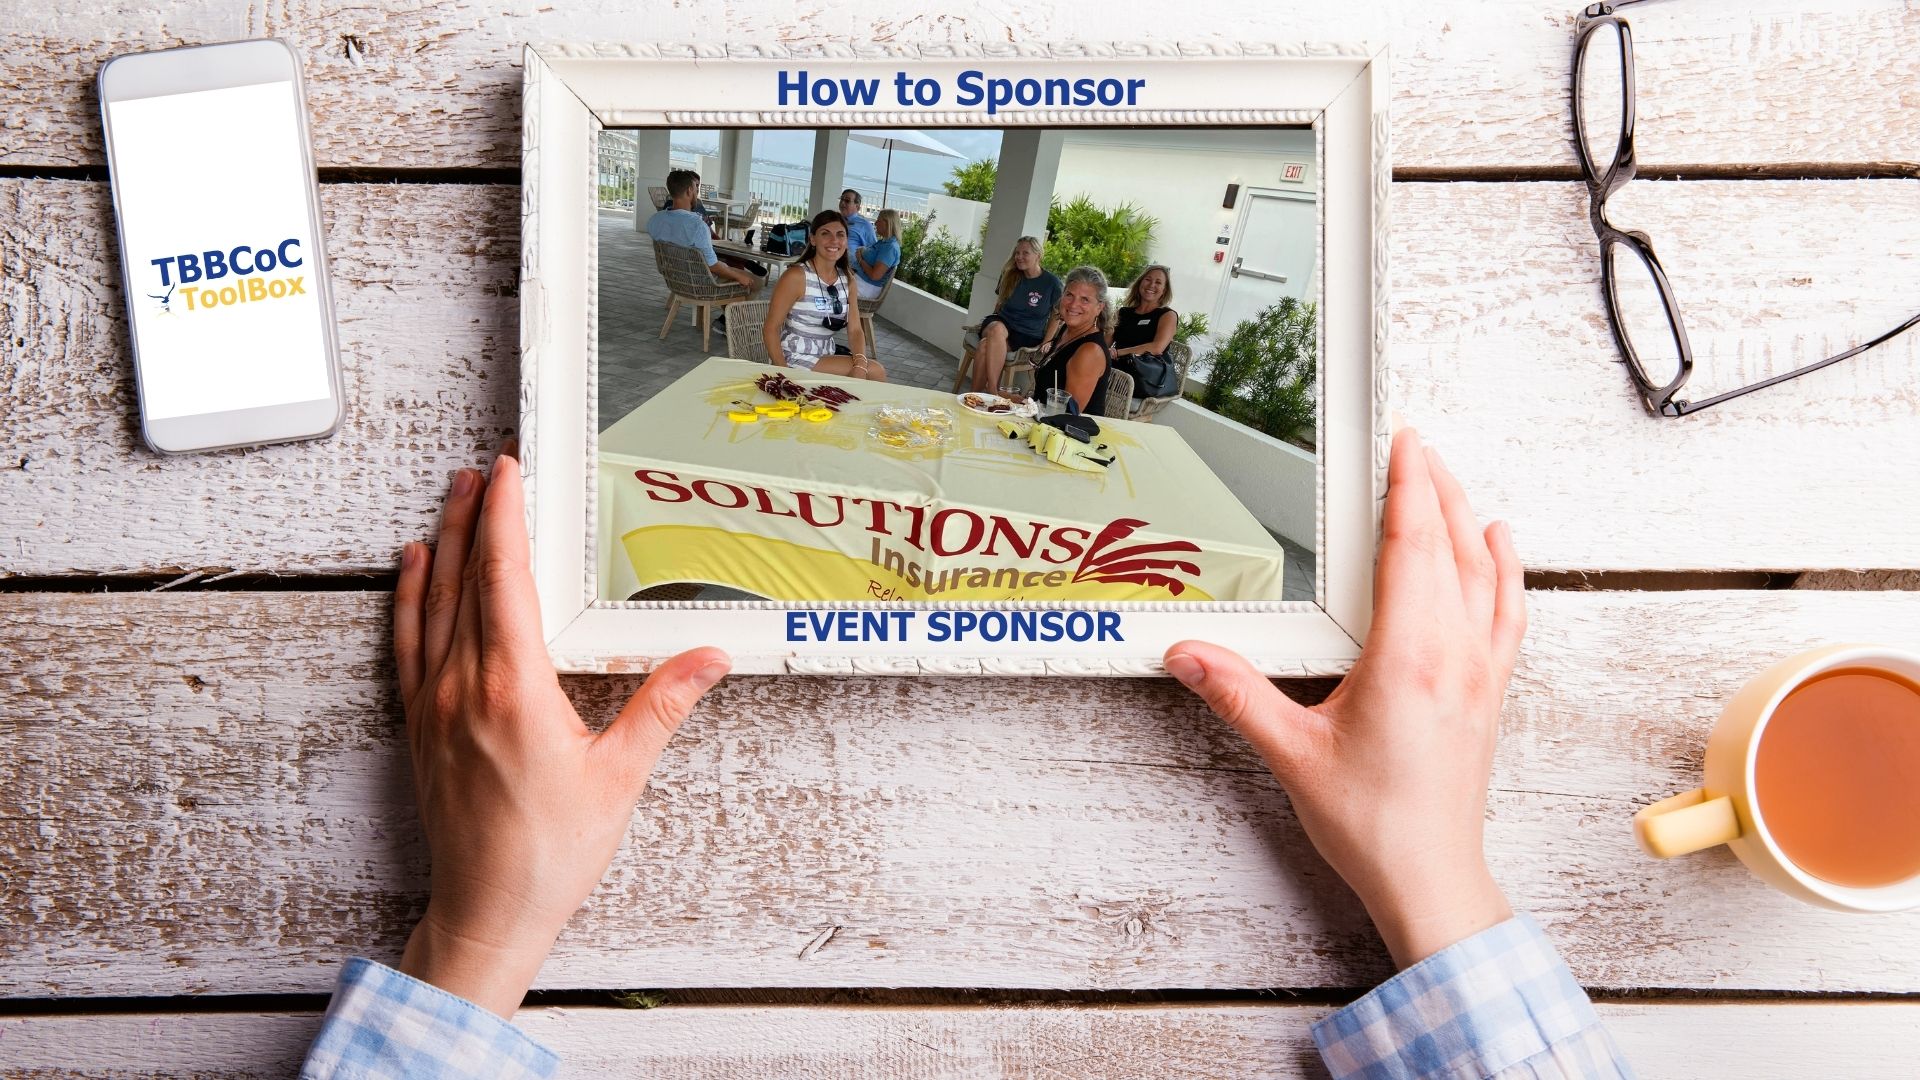 How To Sponsor: Event Sponsor